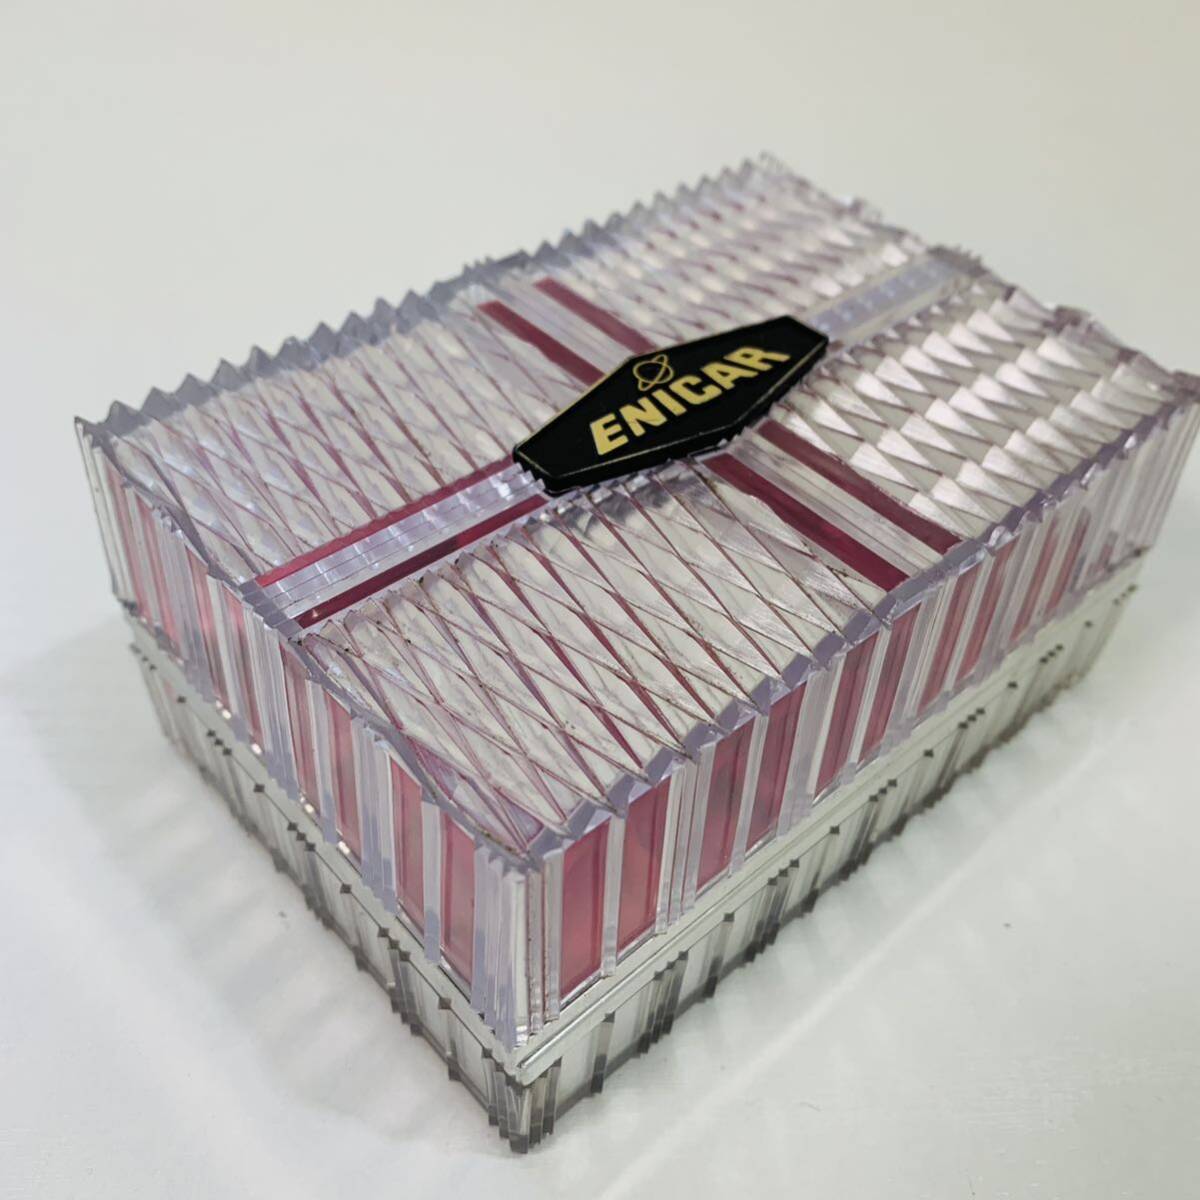 ENICARenika рука кейс для часов box пустой коробка часы кейс прозрачный розовый Logo 12.5cmX8.5cmX6cm не использовался 